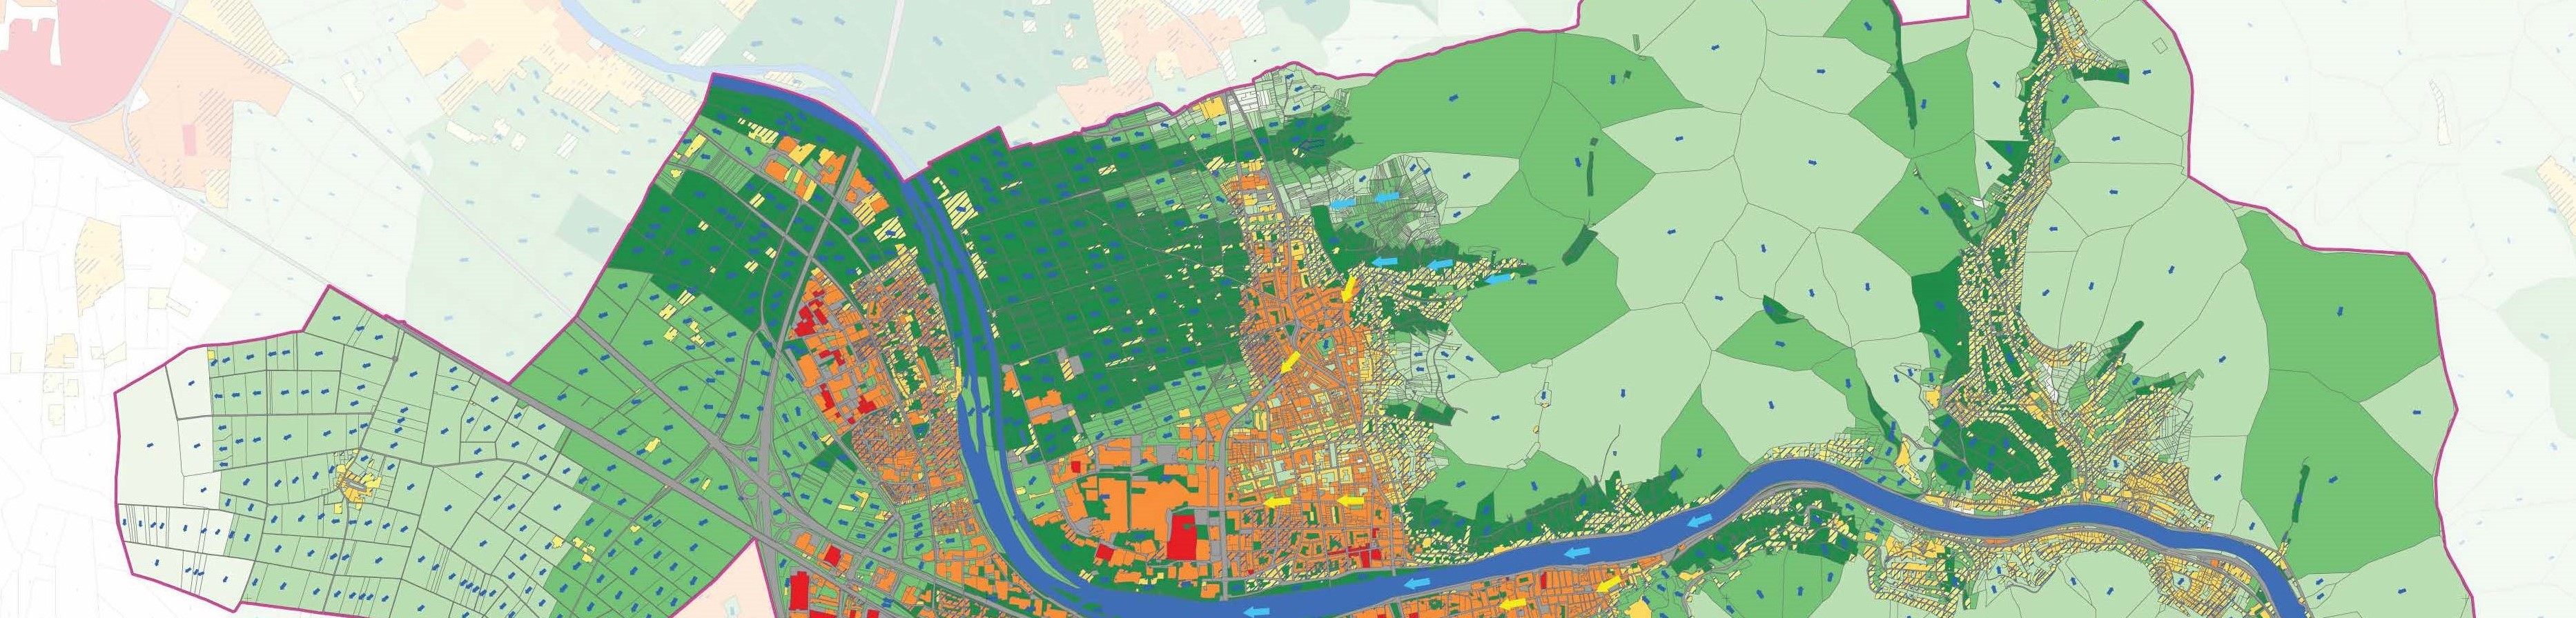 Klimaanalysekarte eines Forschungsprojekts der Stadt Heidelberg